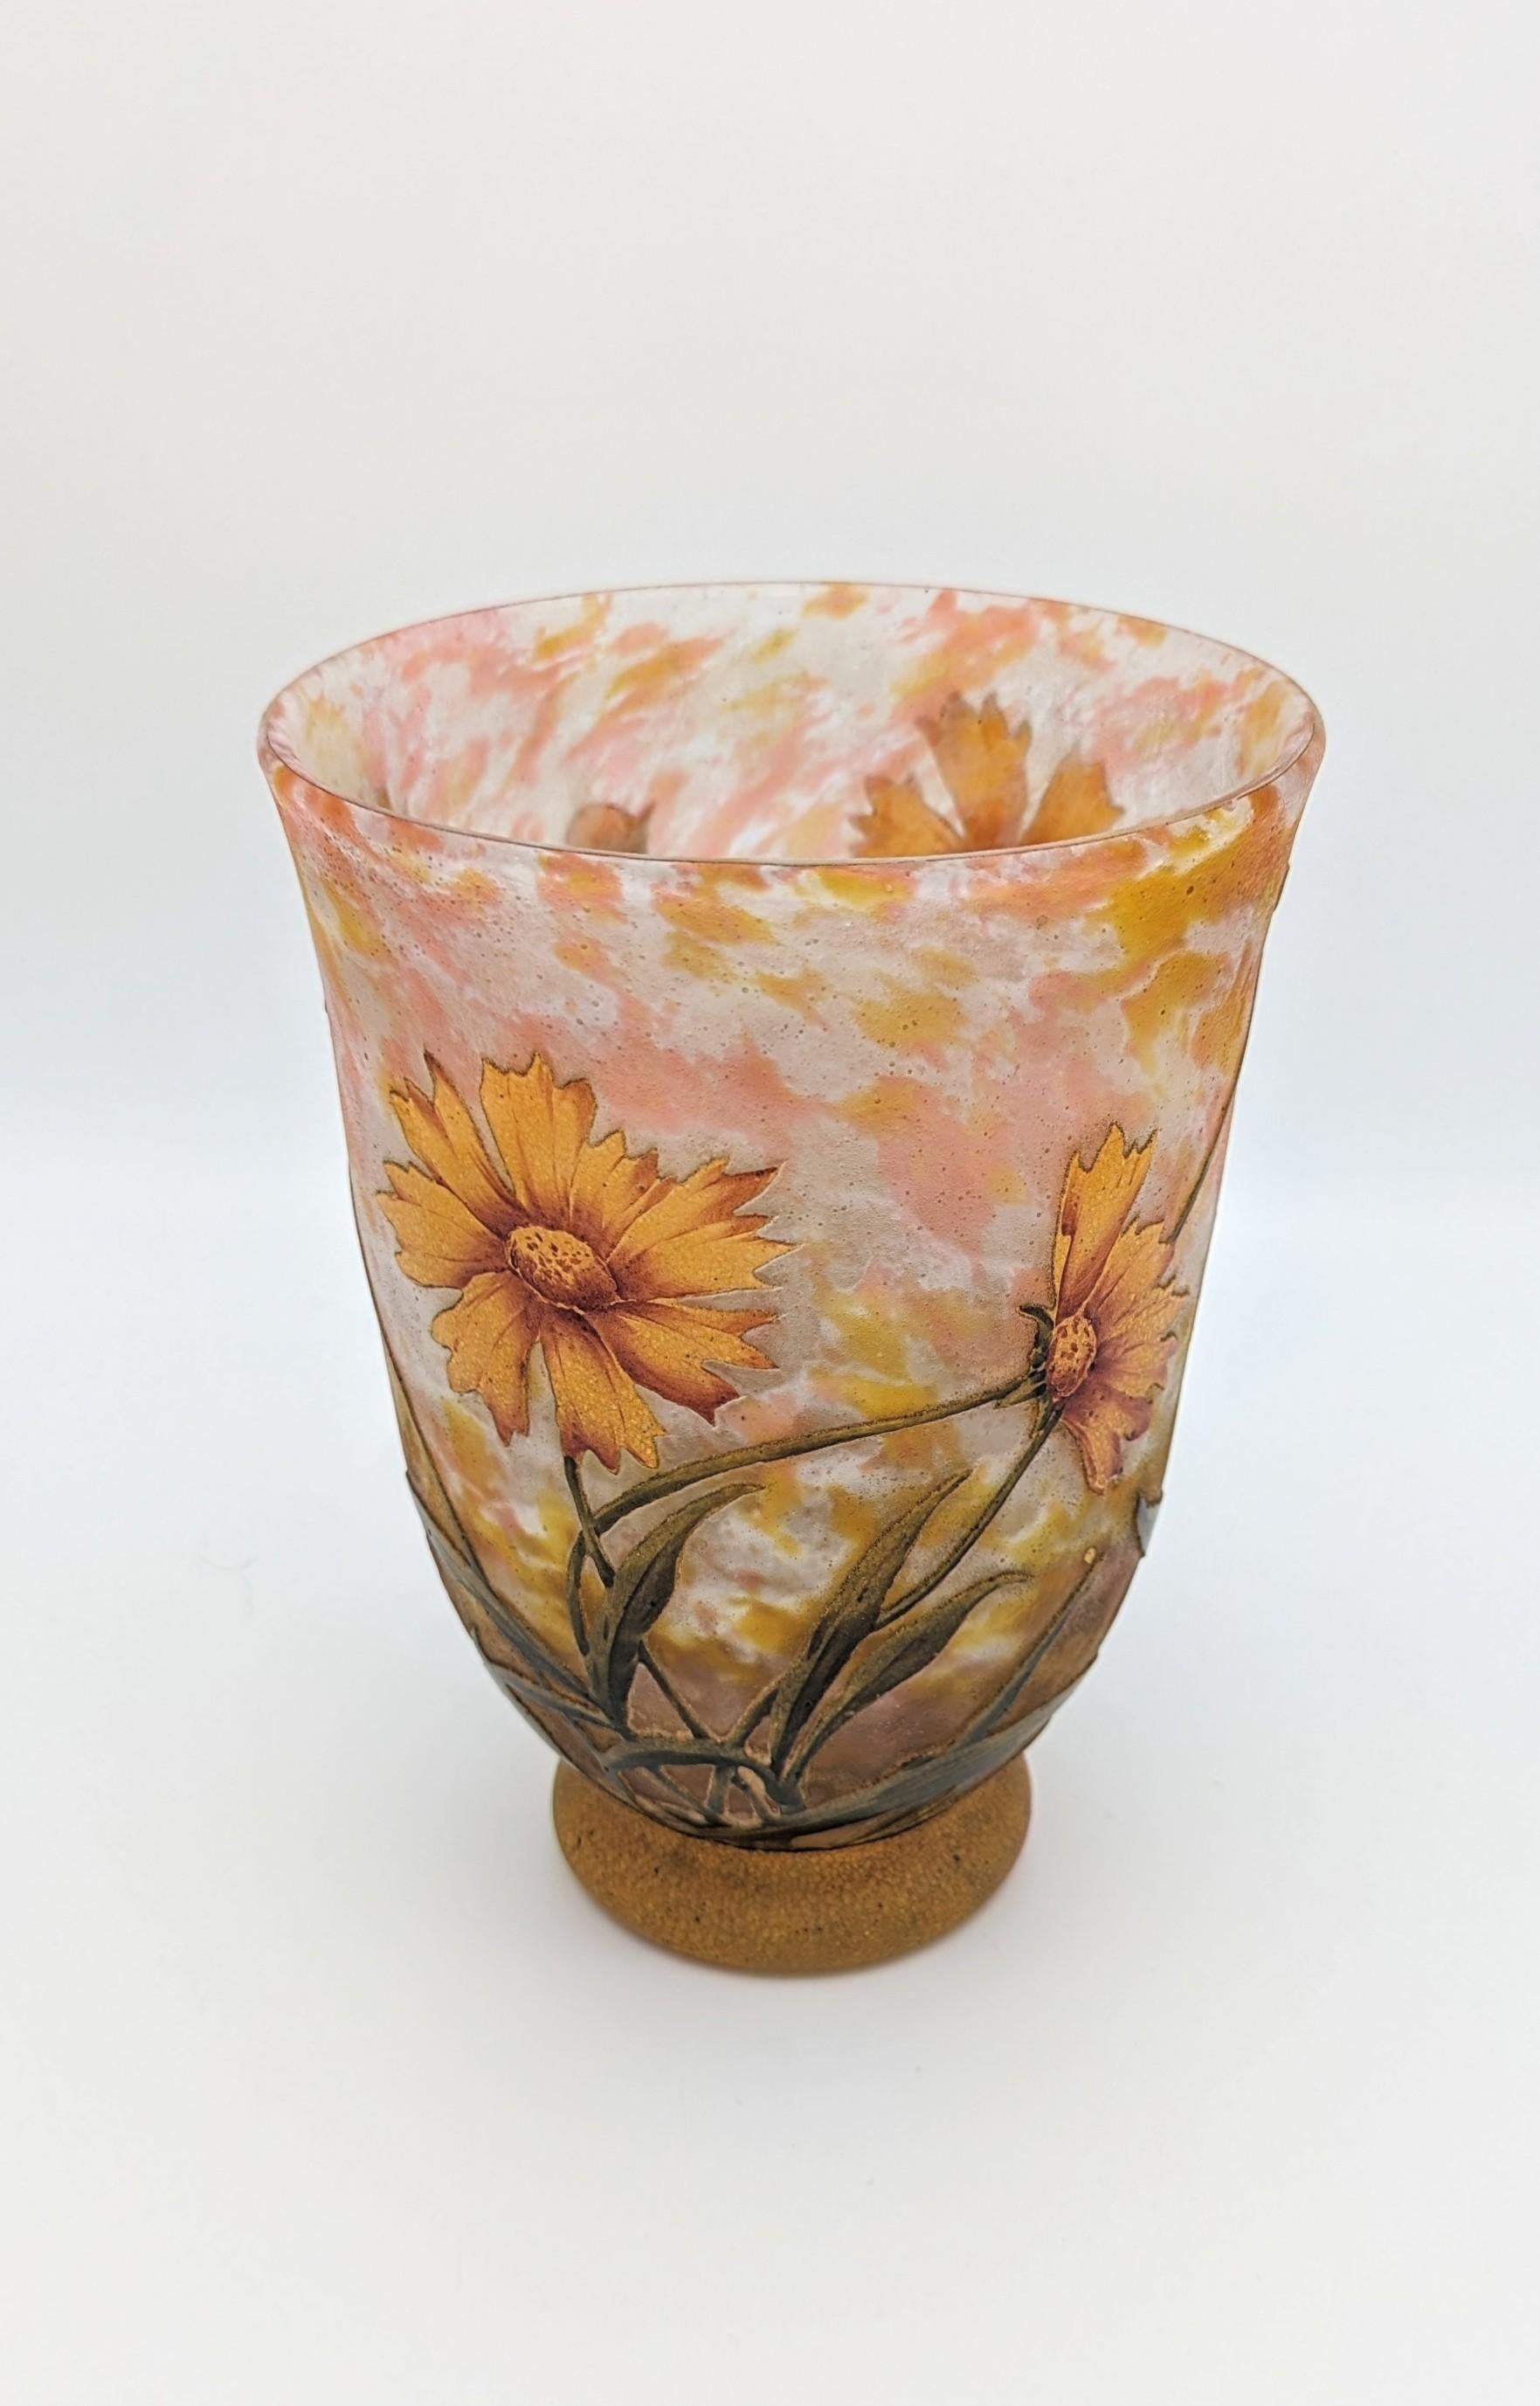 Un beau vase Daum Frères avec des fleurs de Coreopsis, fabriqué à Nancy, France, vers 1914. Cet exemple de verre camée français a été marbré avec de la poudre de verre, recouvert d'un overlay, puis gravé à l'acide et émaillé. Il s'agit d'un exemple